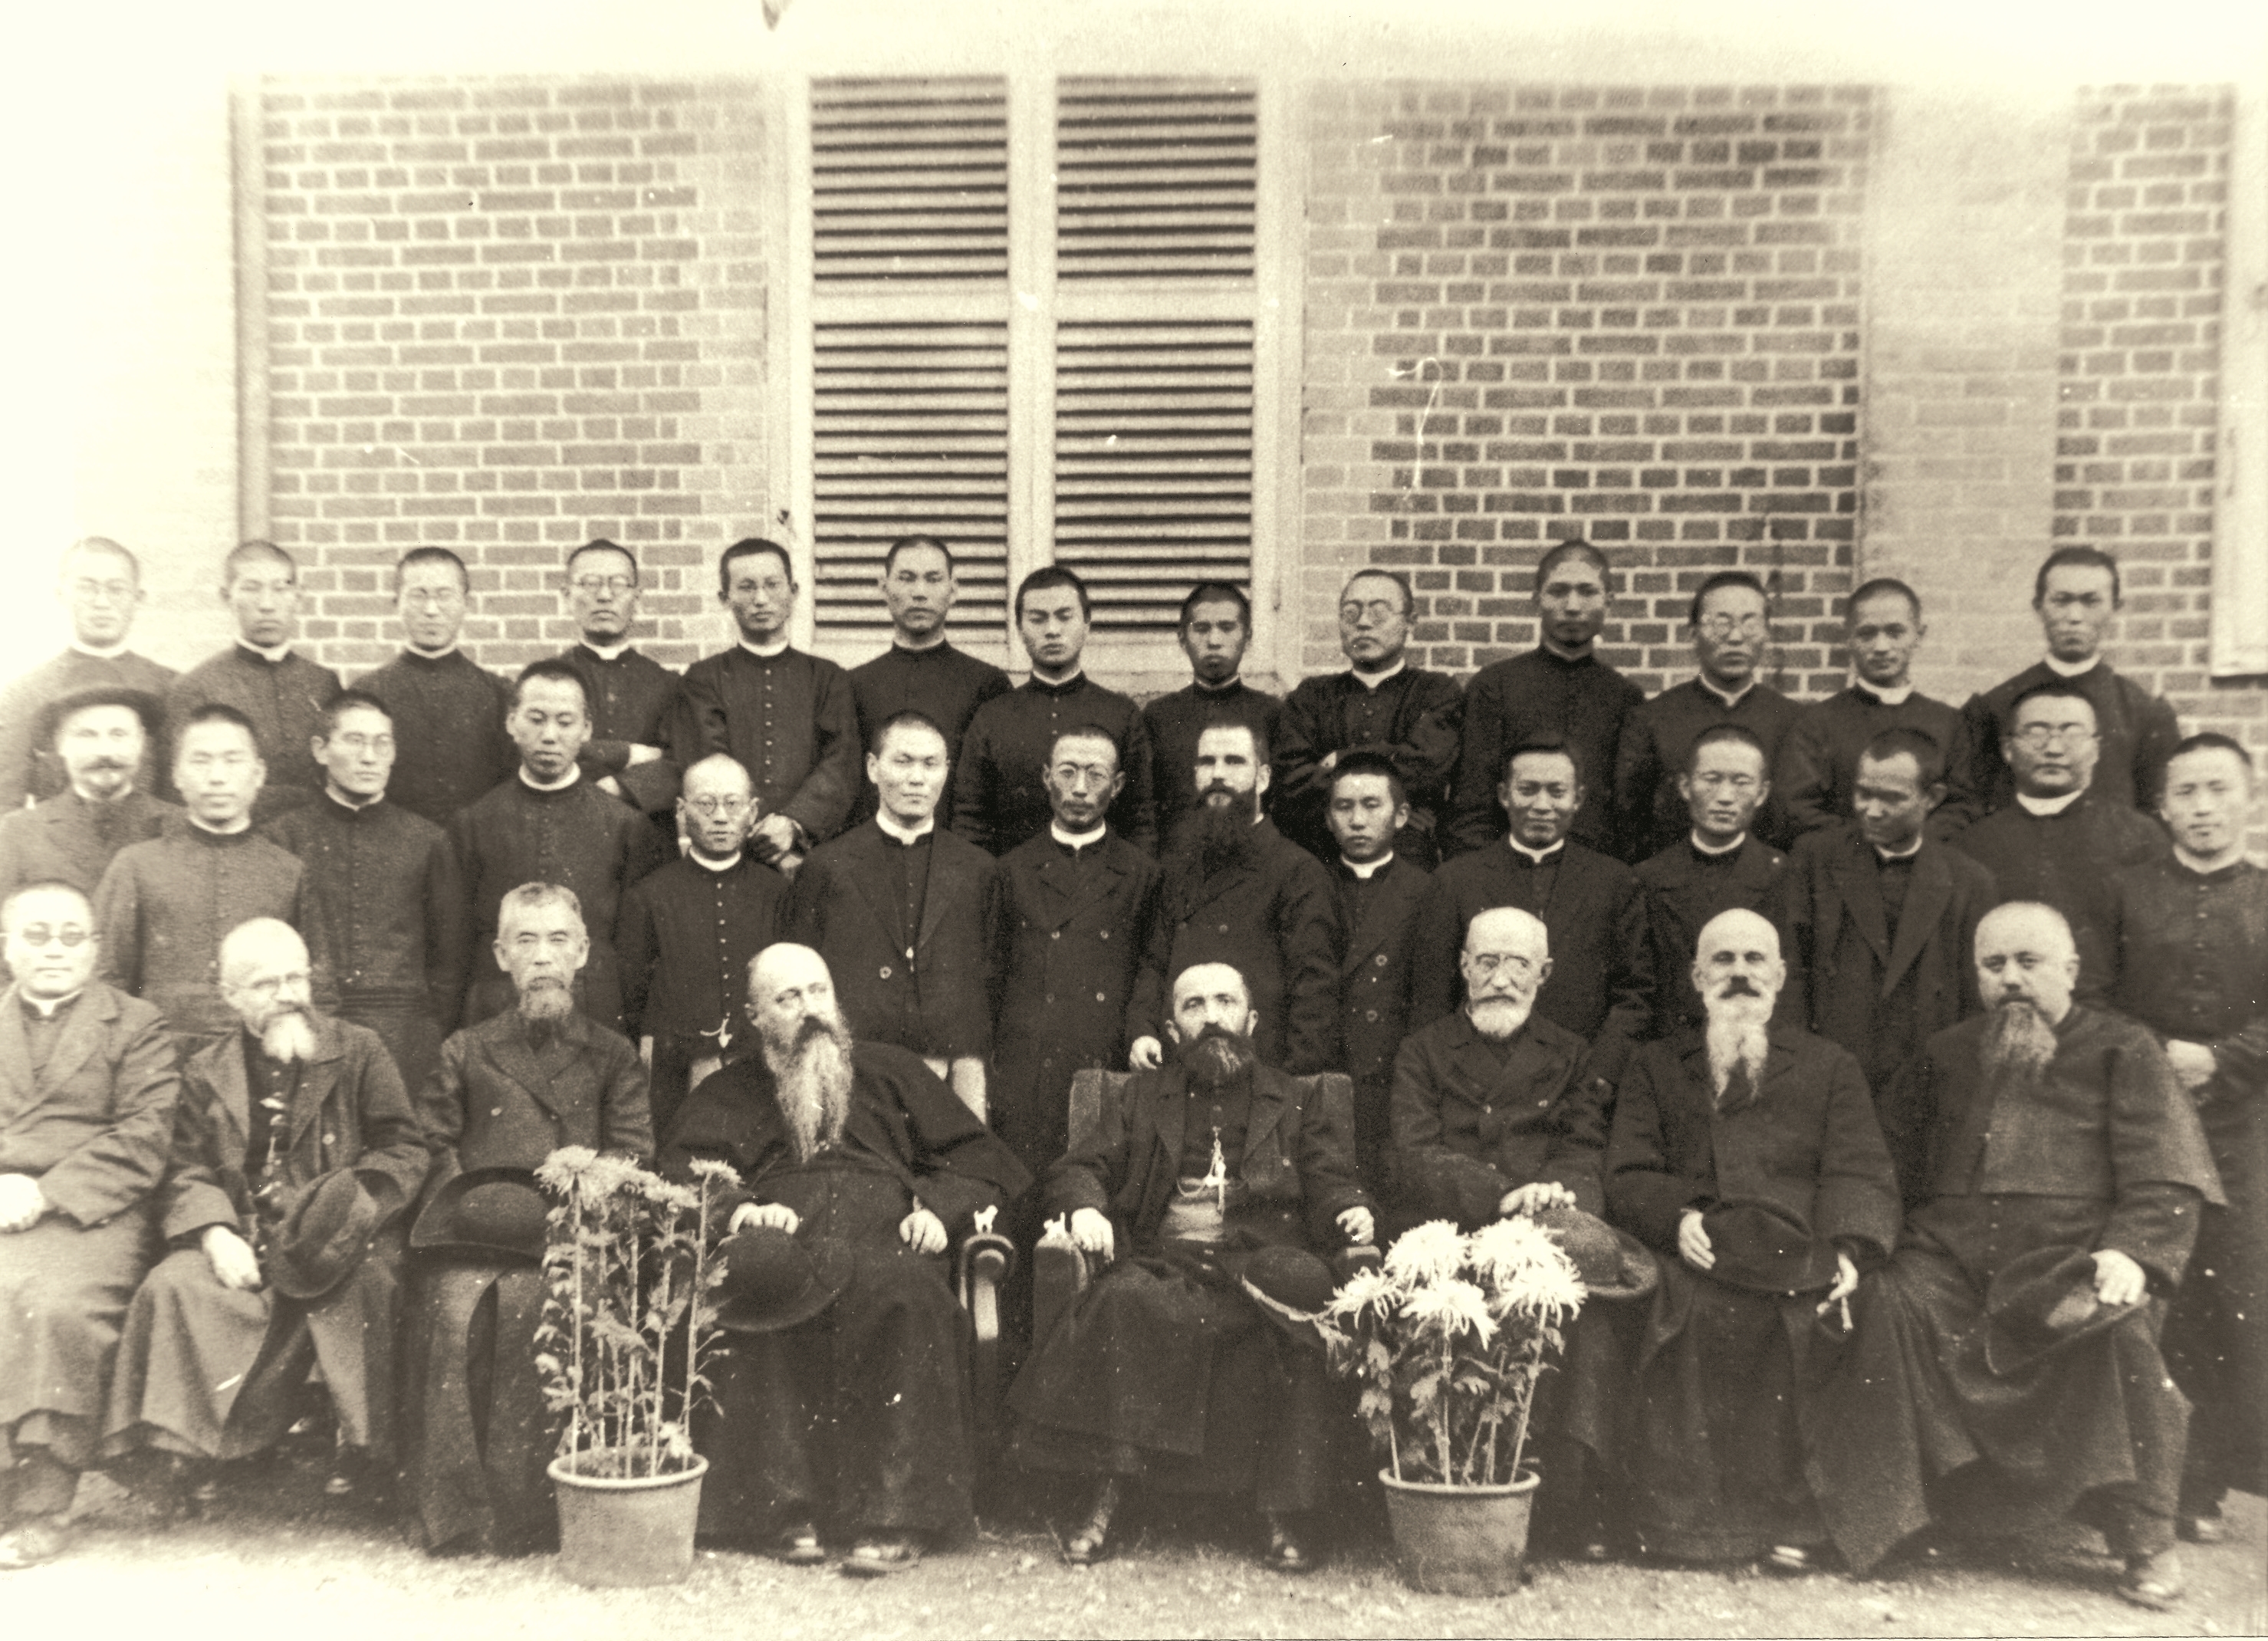 용산 예수성심신학교(1887~1942) (3)의 관련된 이미지 입니다.